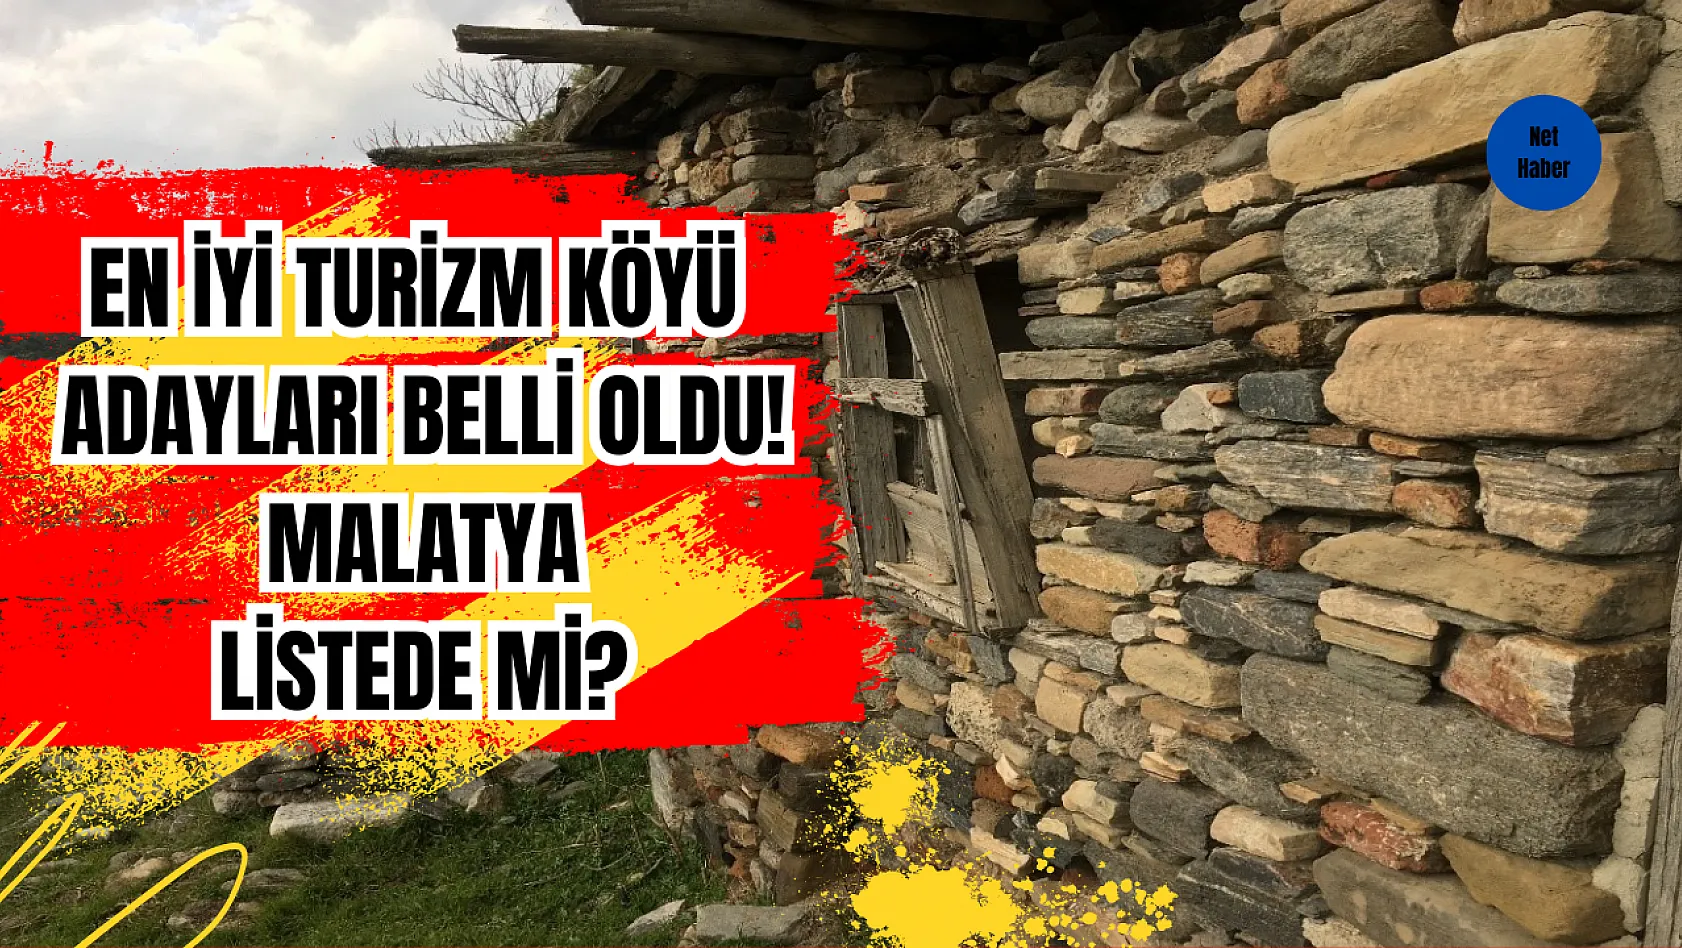 En İyi Turizm Köyü adayları belli oldu! Listede Malatya var mı?